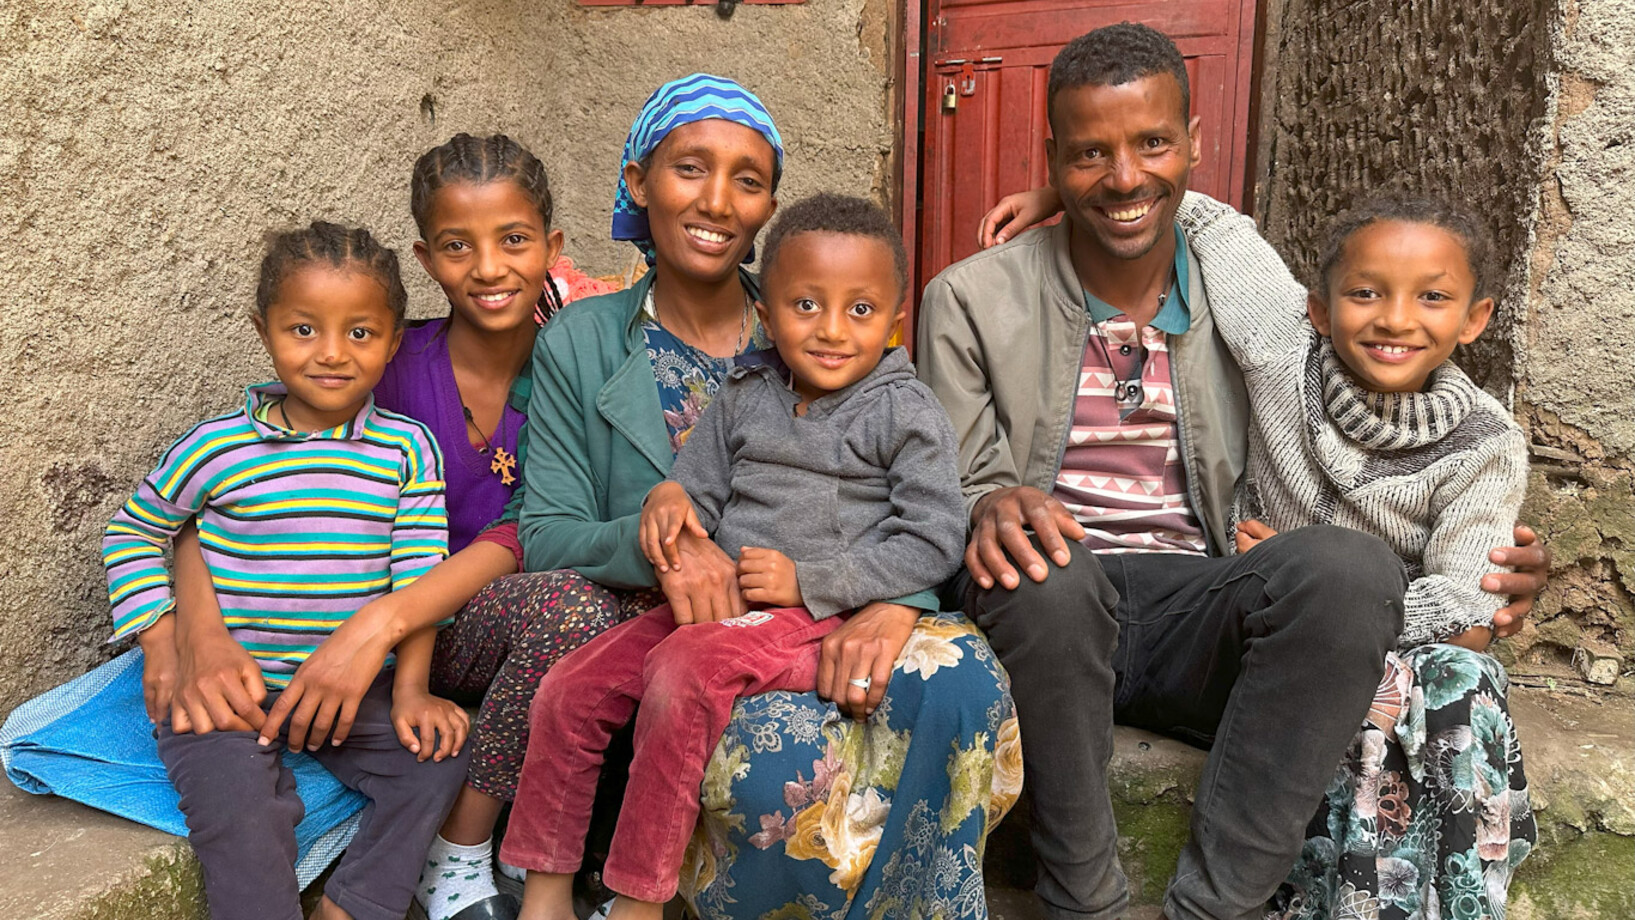 Äthiopische Familie mit 4 Kindern. Sosina Sisay und ihr Mann Abush Tesfaye konnten sich aus der Armut befreien